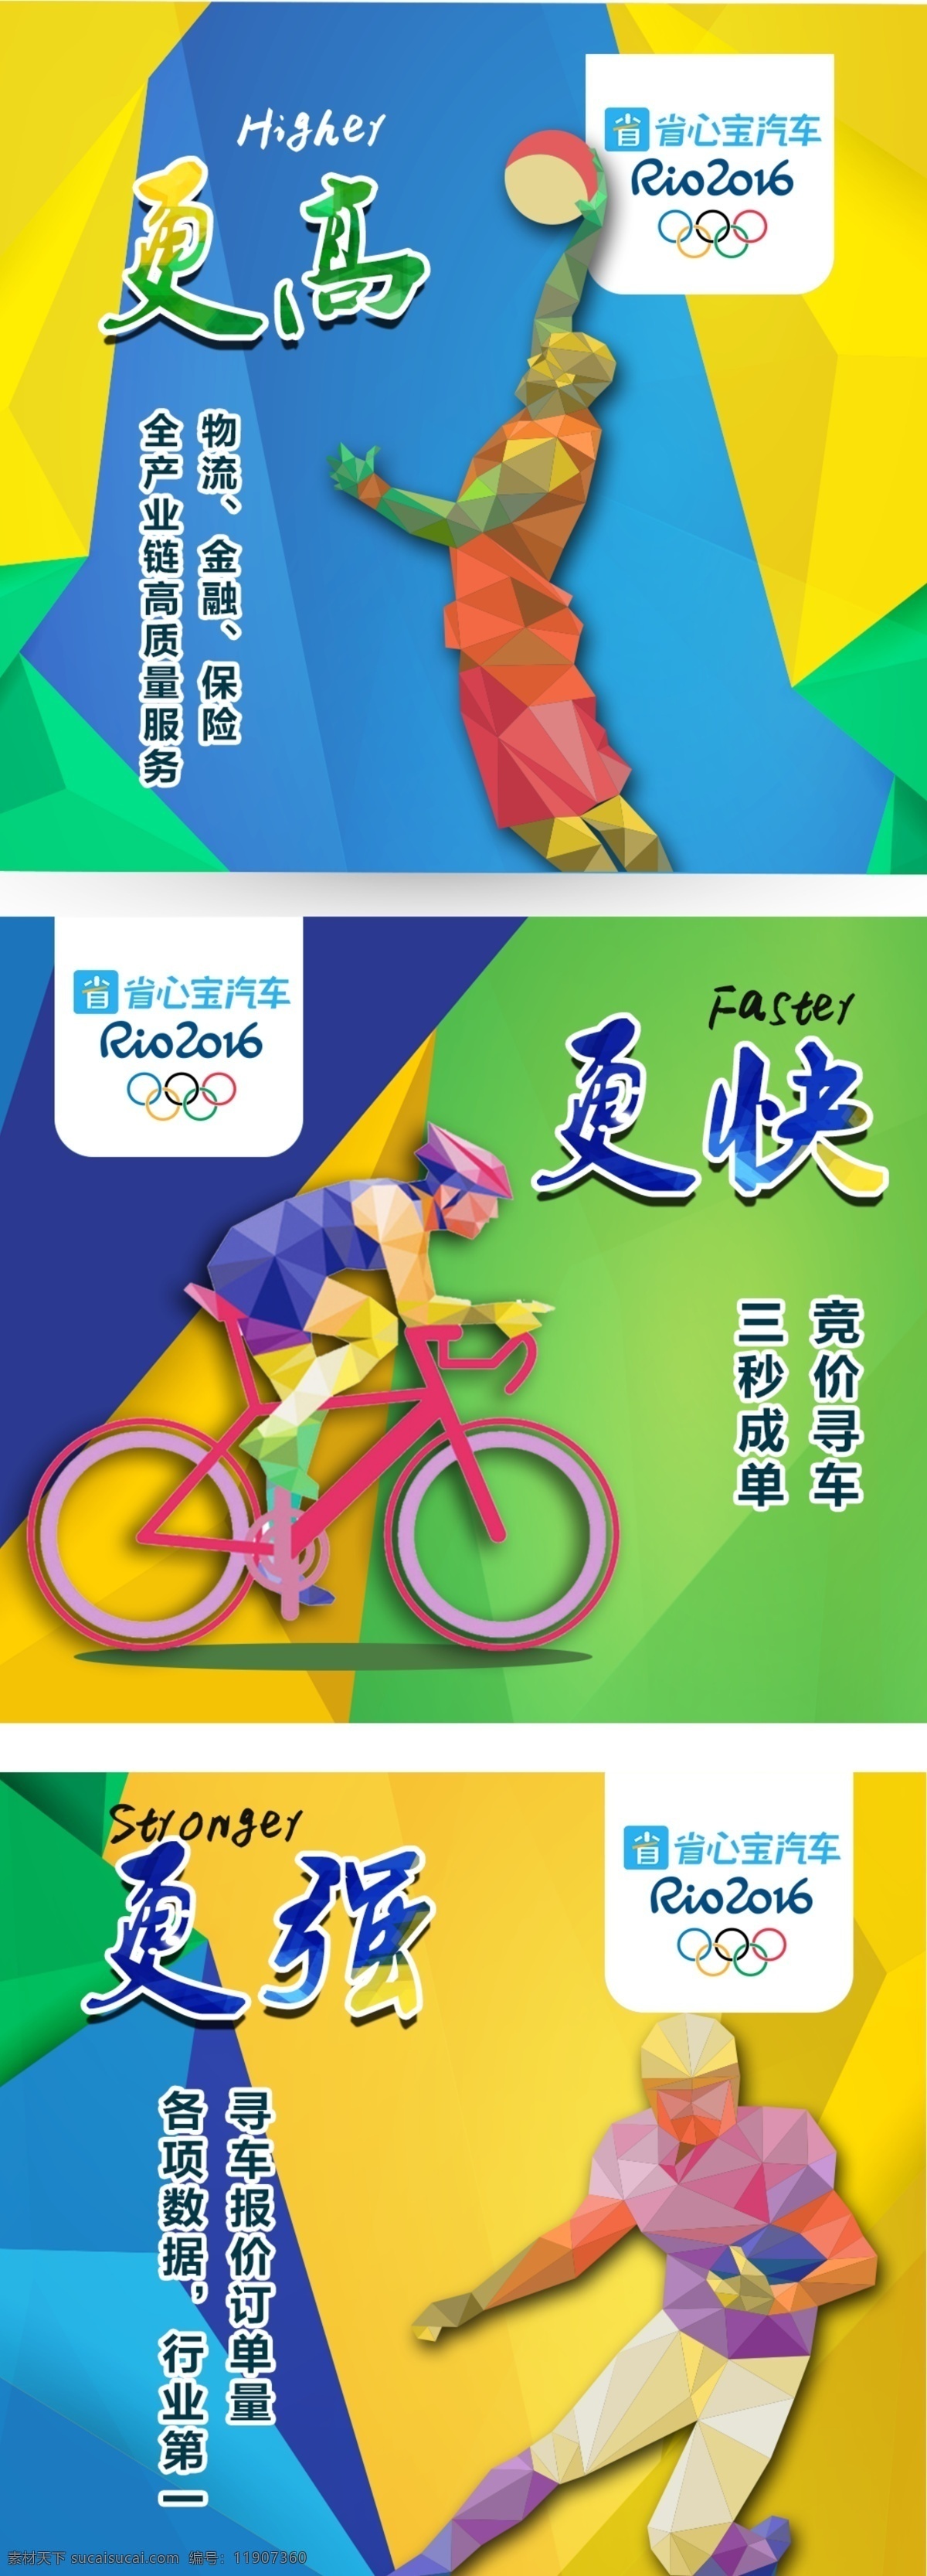 奥运 主题 更 高更 强 更快 宣传海报 平面设计 背景 海报 扁平 几何 更高更快更强 汽车 运动 运动员 奥运会 黄色